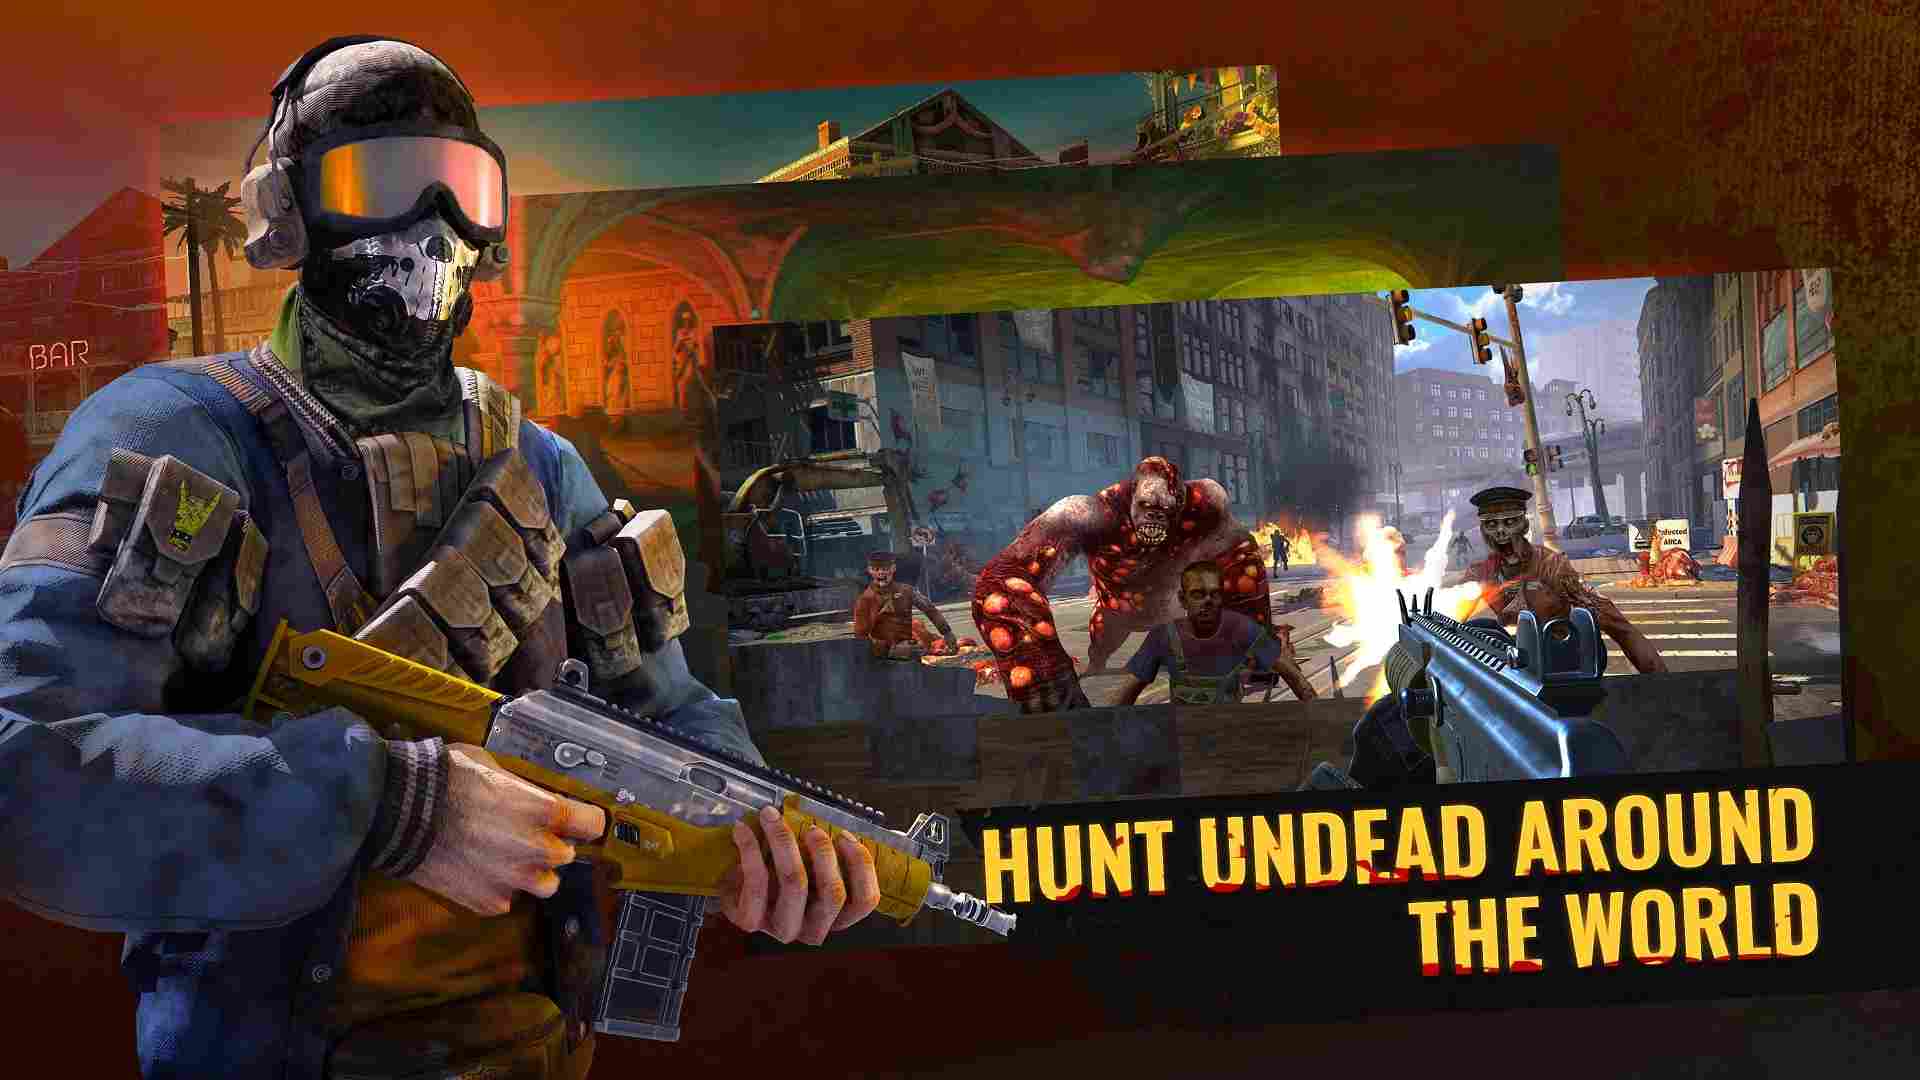 Undead Clash: Zombie Games 3D 1.11.0 APK MOD [Menu LMH, Bất Tử, One Hit]